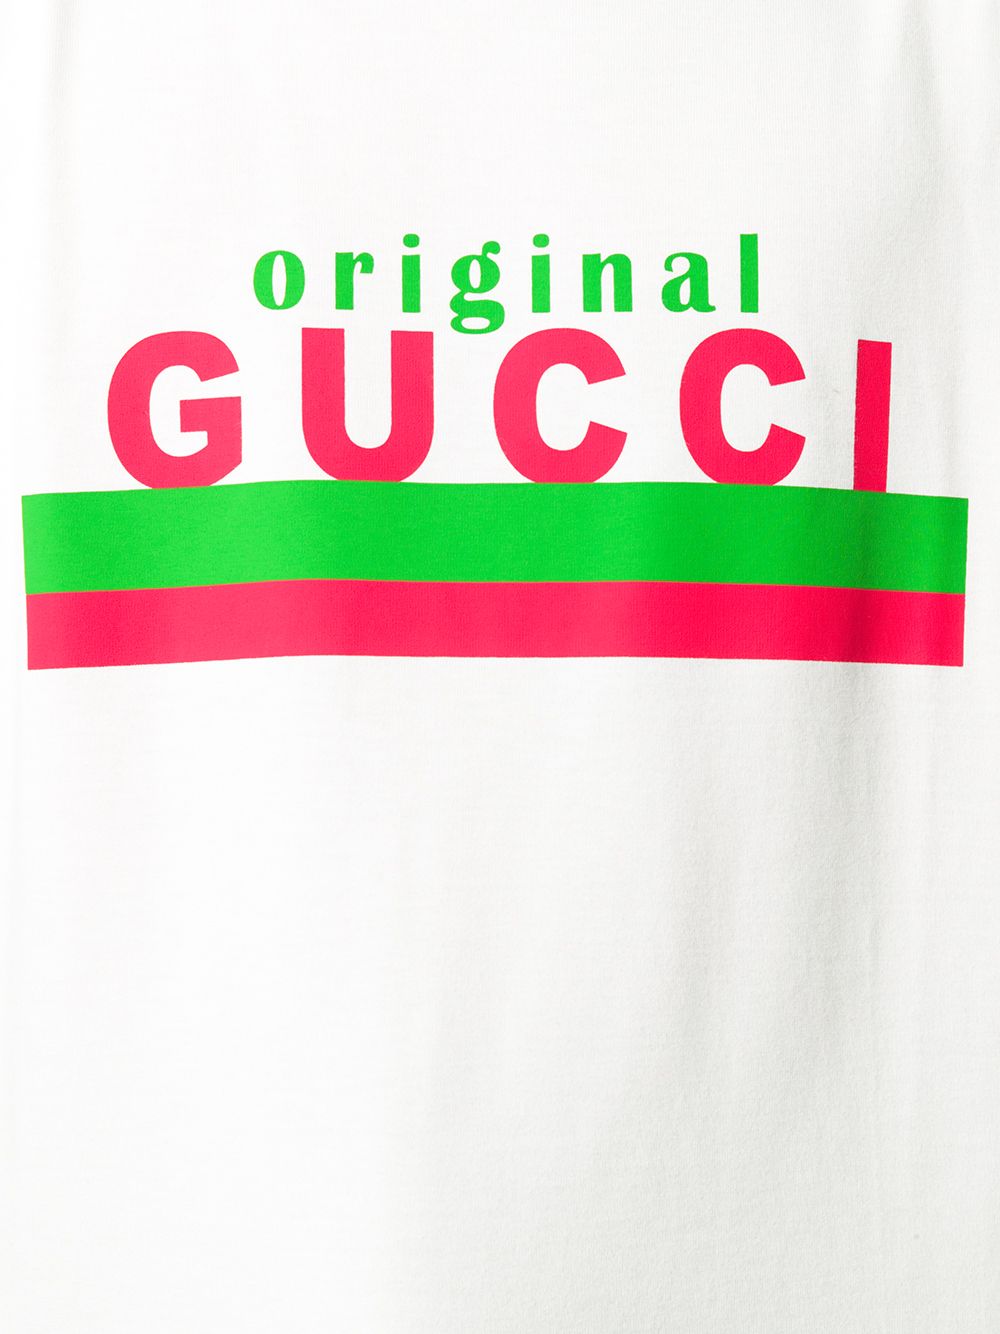 фото Gucci футболка с логотипом